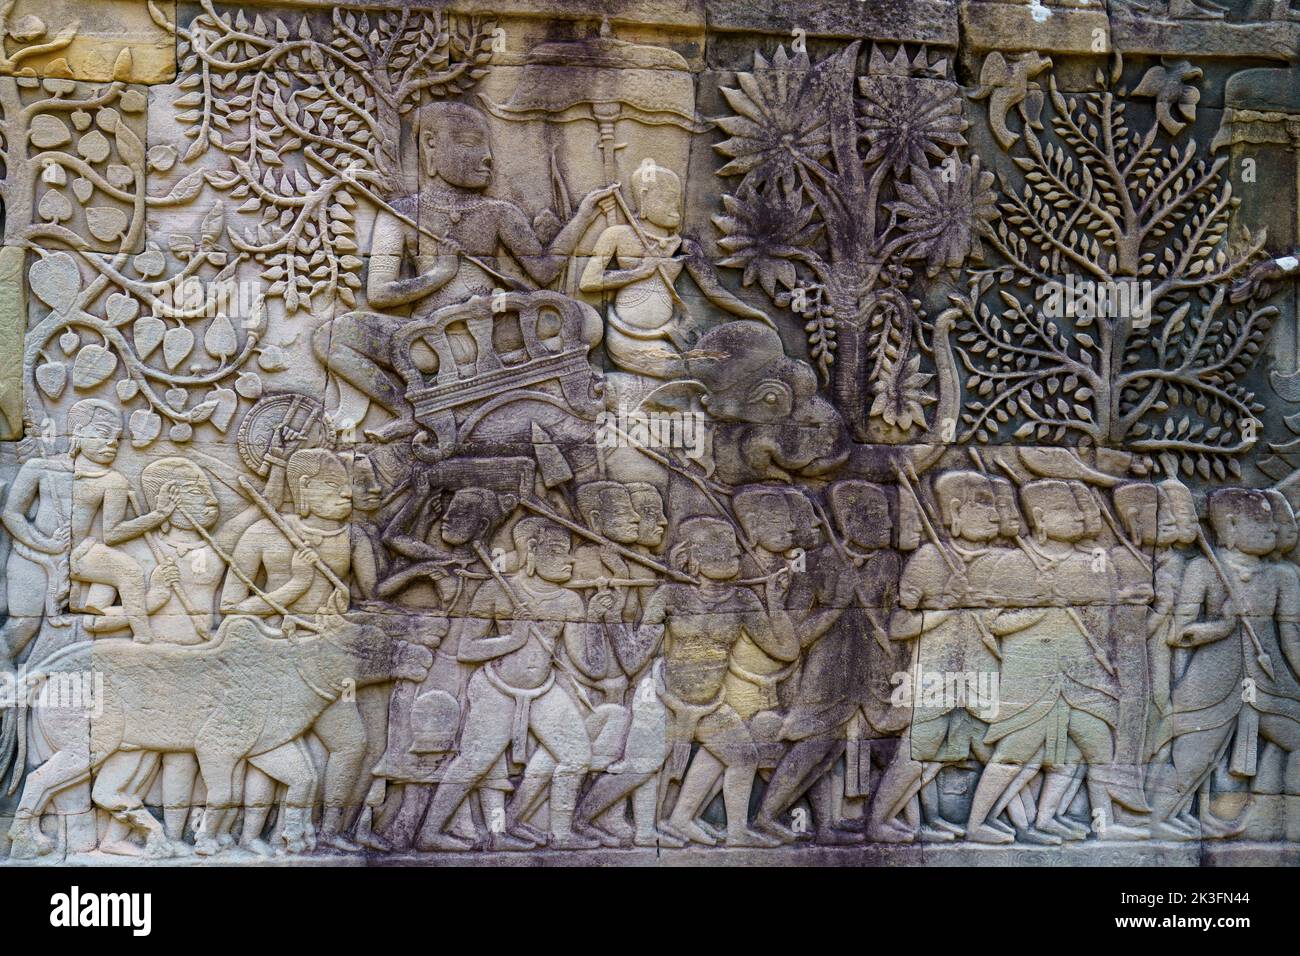 Cambodge. Siem Reap. Le parc archéologique d'Angkor. Un bas relief au temple de Bayon 12th siècle temple hindou Banque D'Images